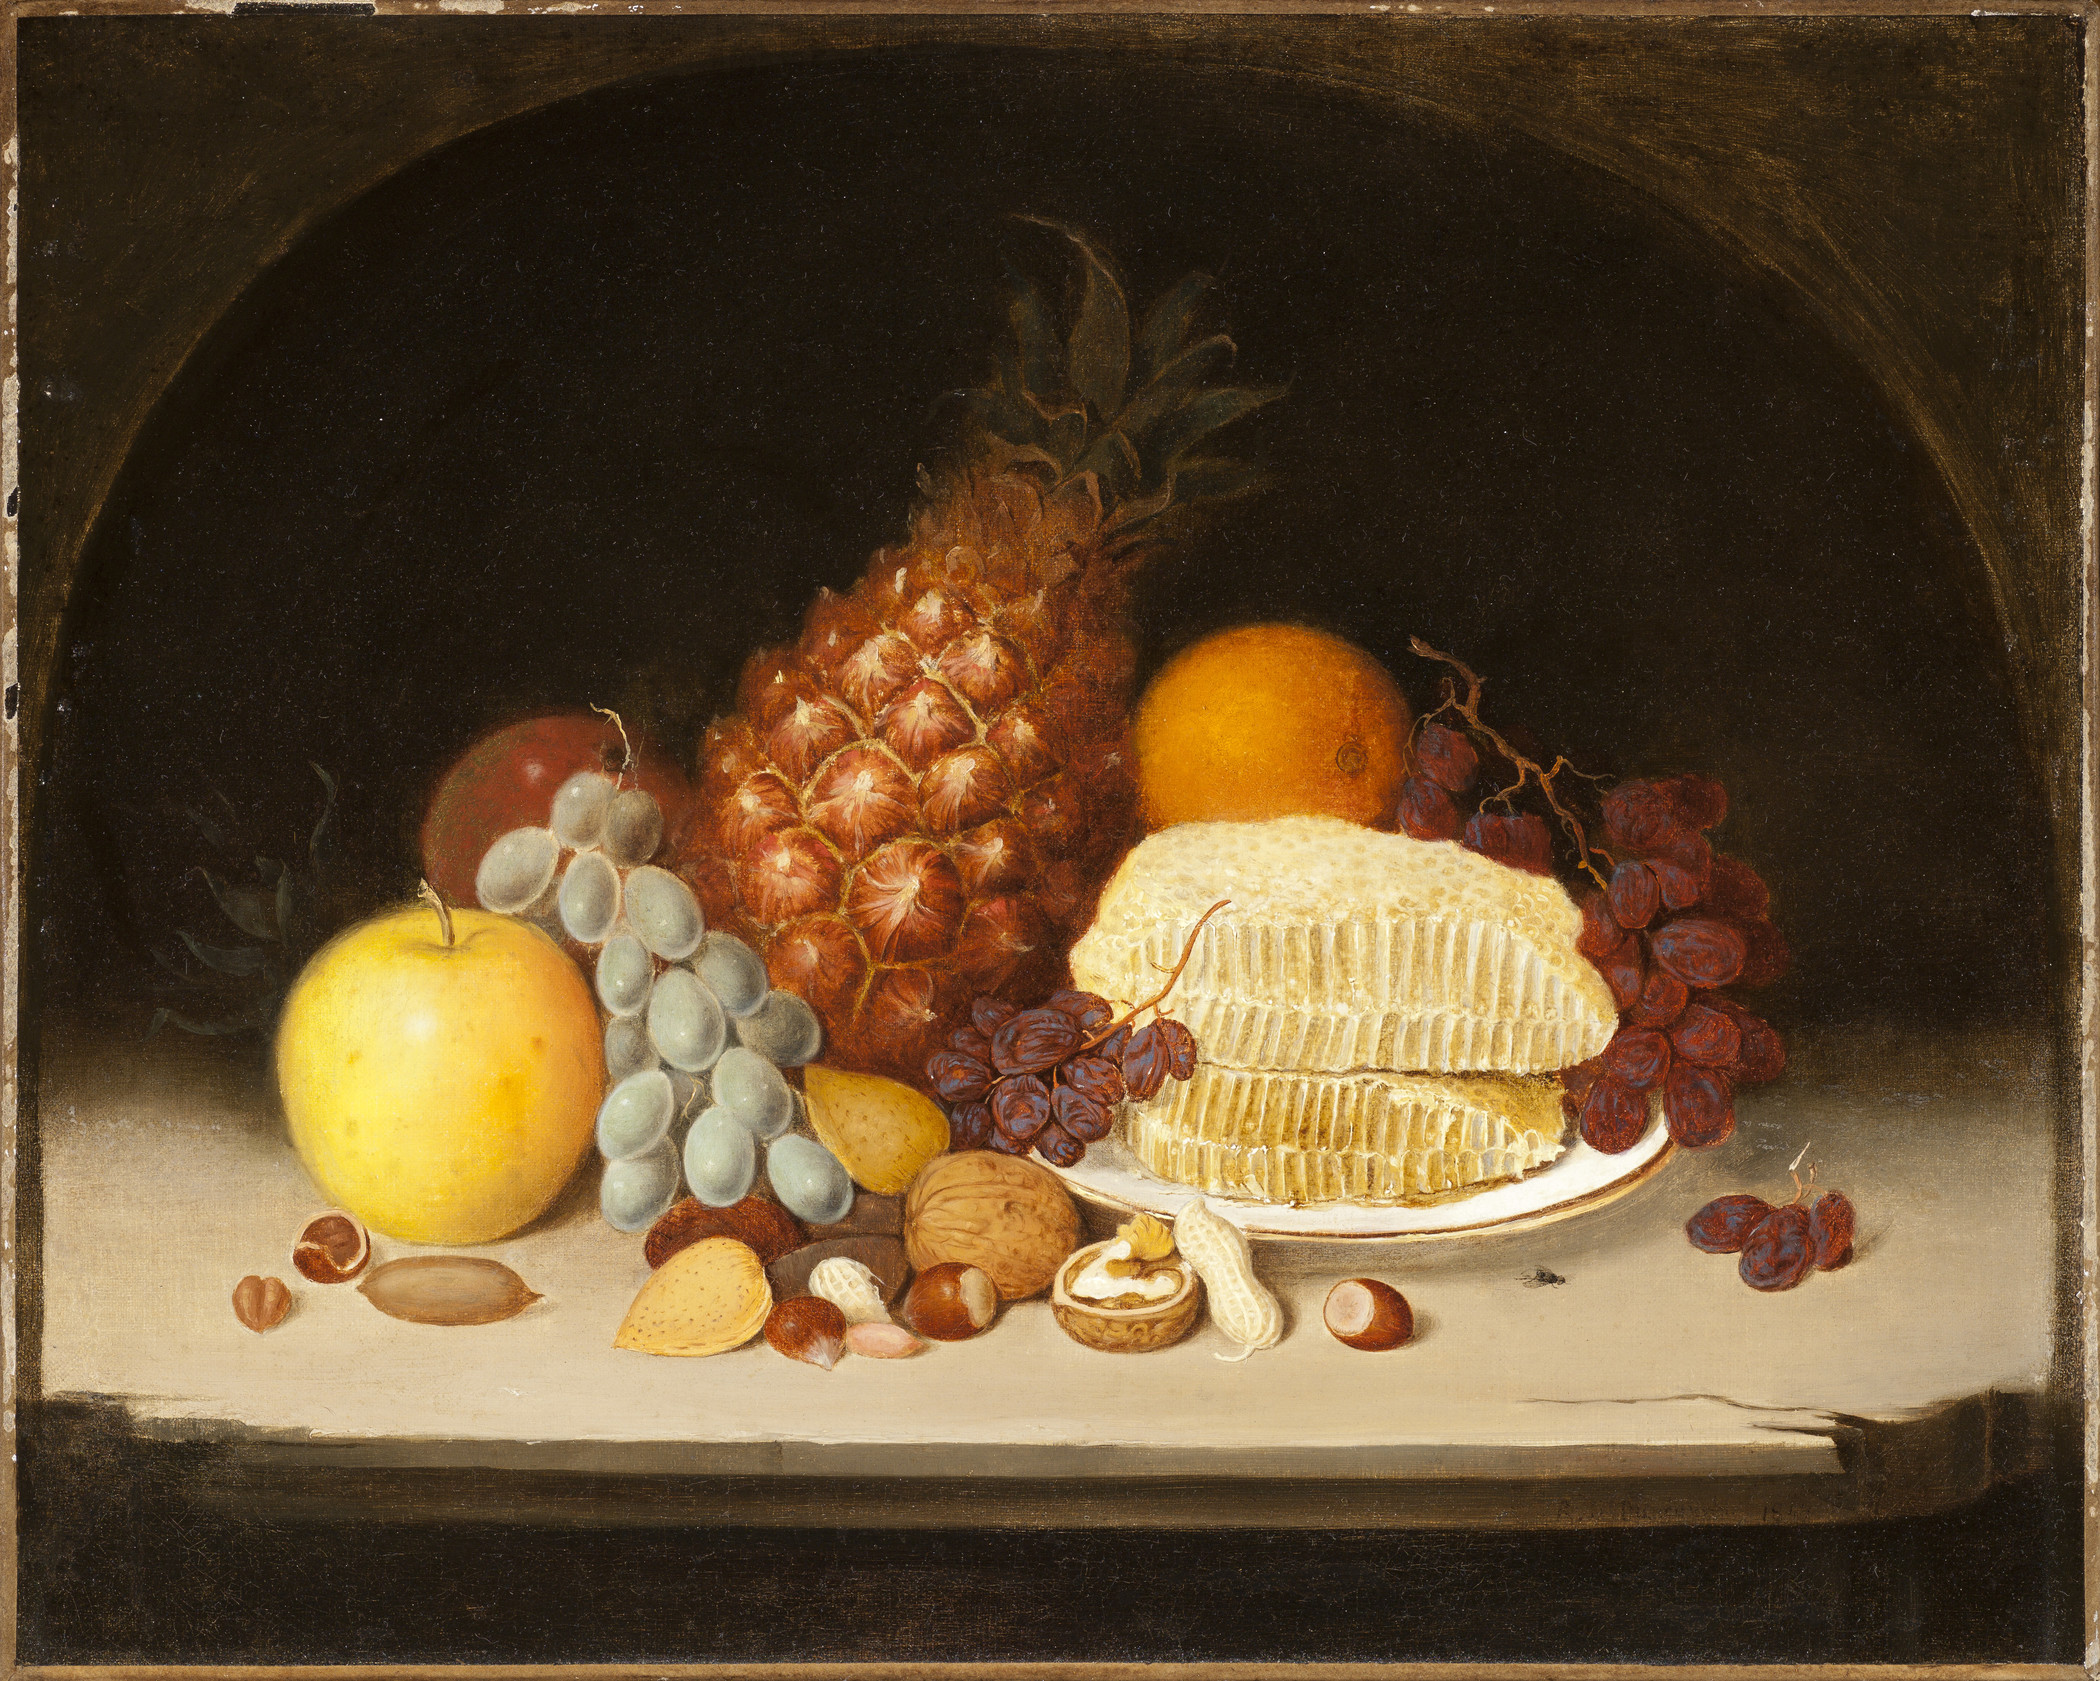 Natürmort (orig. "Still-Life") by Robert Duncanson - 1849 - 41 x 51,28 cm 